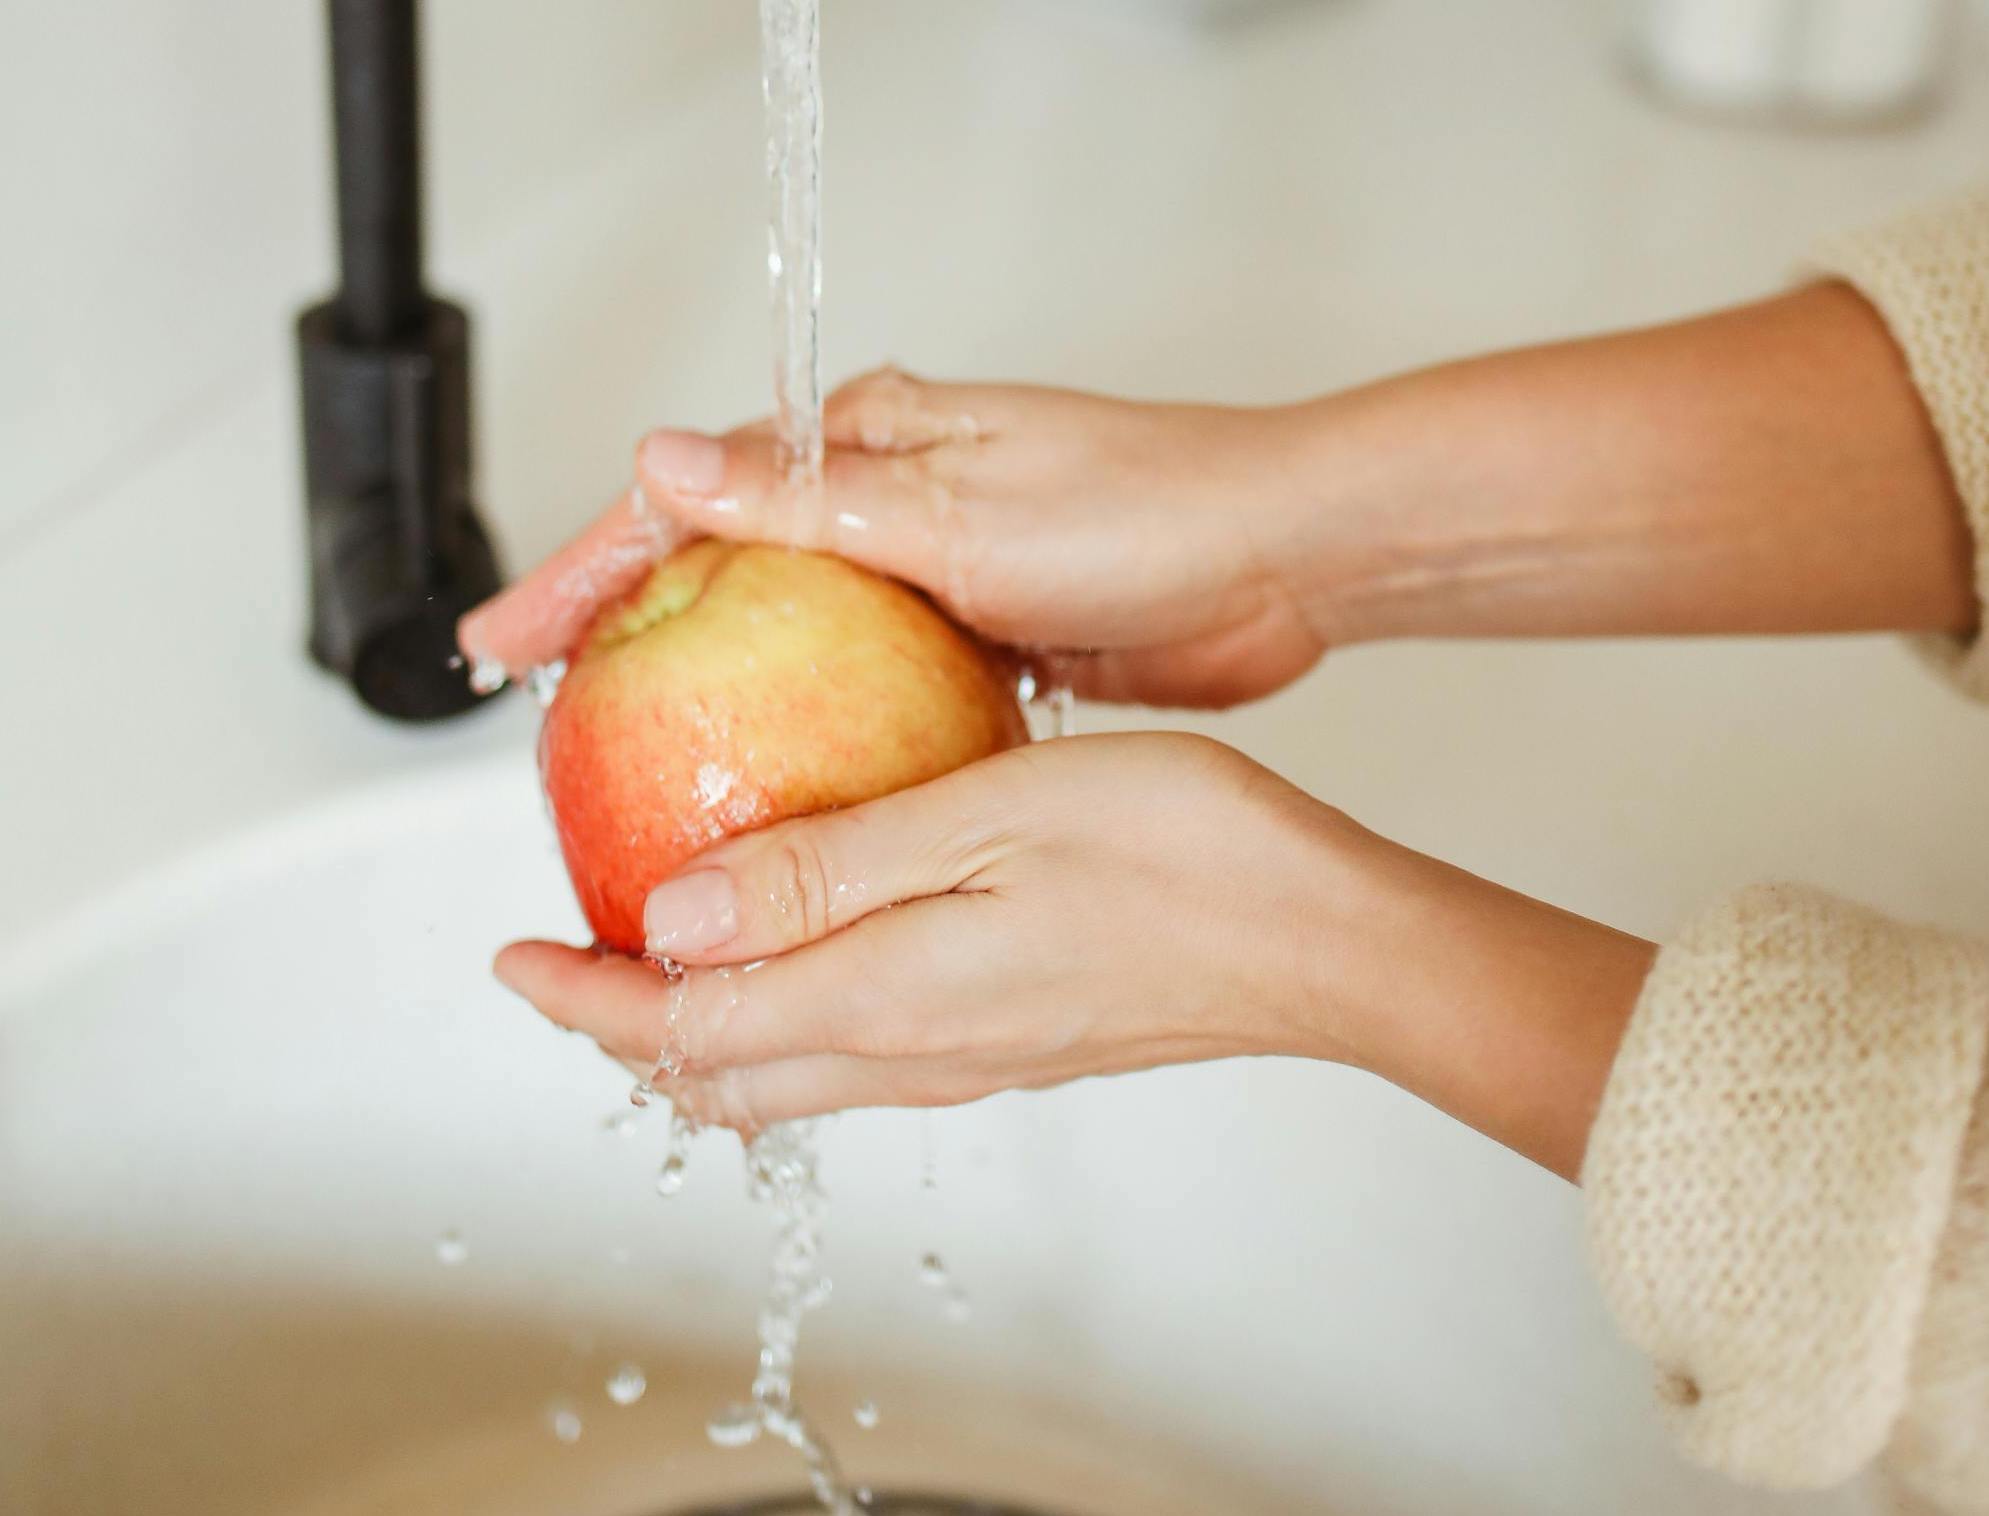 Jak poprawnie myć owoce: praktyczne porady dla zdrowia i higieny